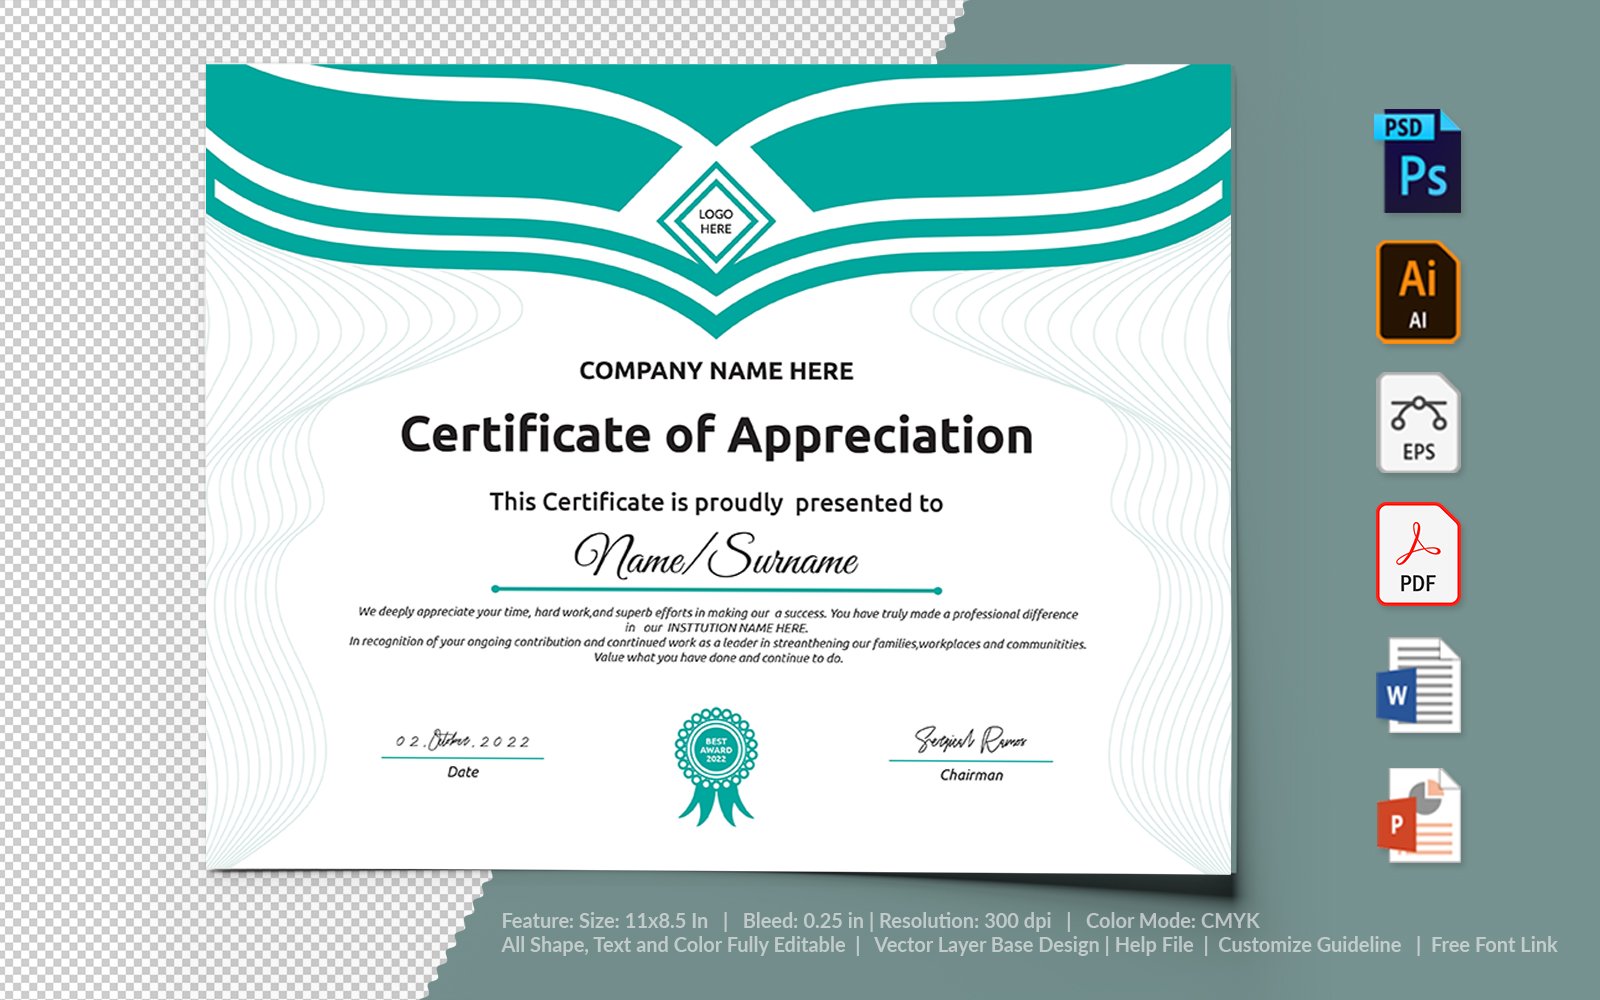 Kit Graphique #104734 Certificate Appreciation Divers Modles Web - Logo template Preview